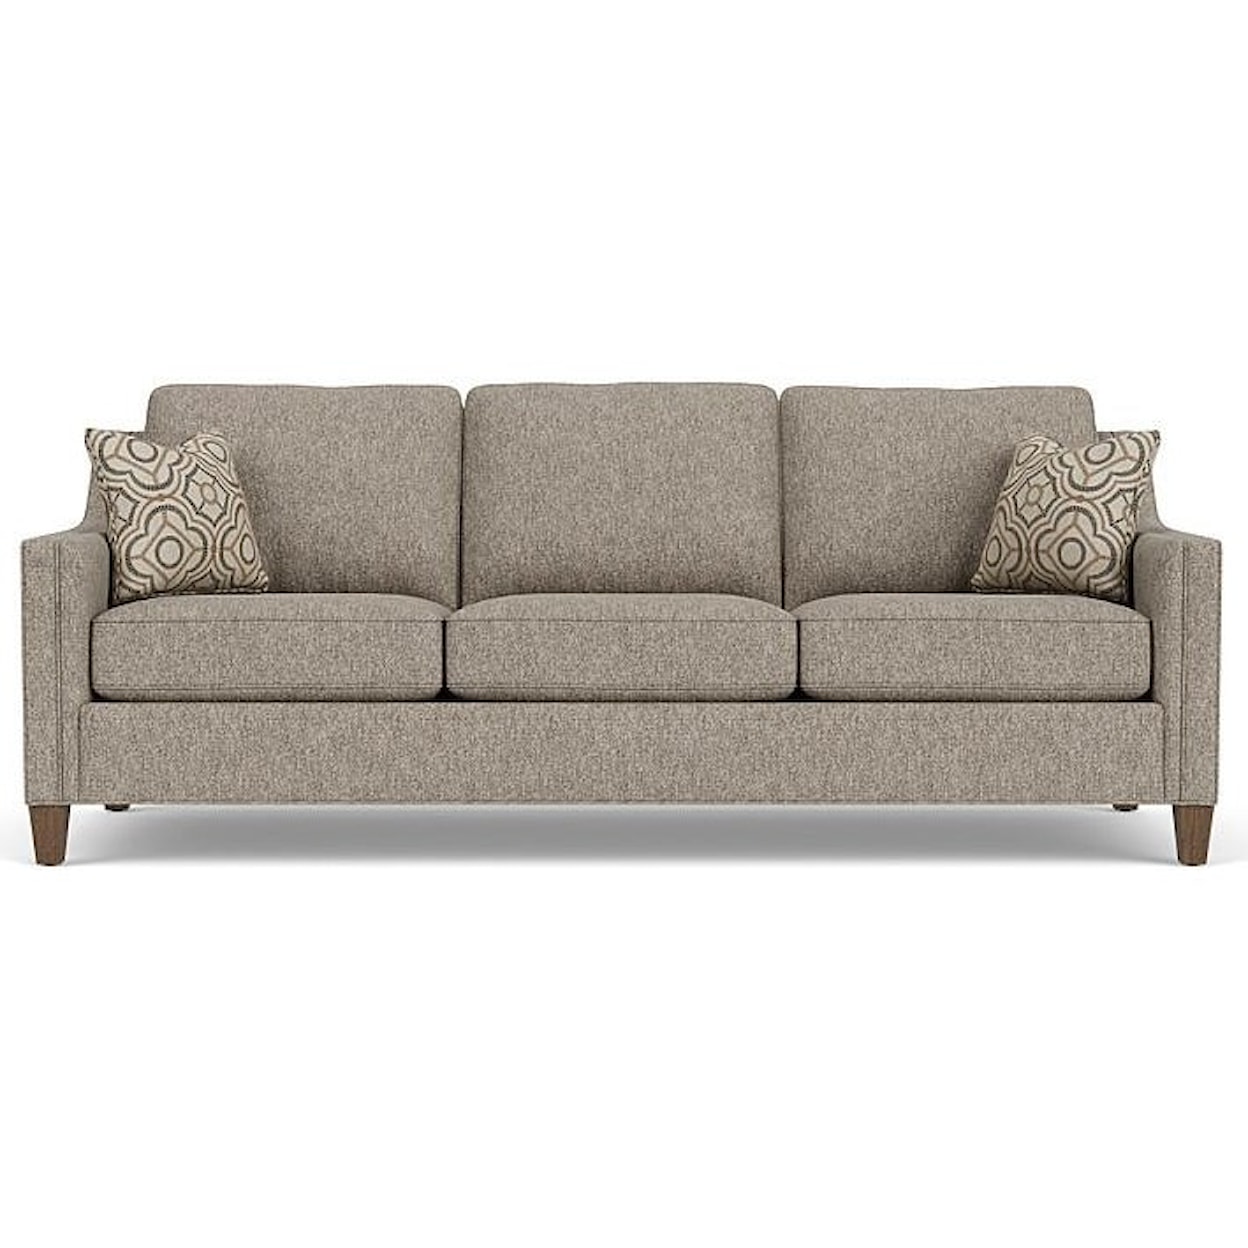 Flexsteel Finley Contemporary Sofa